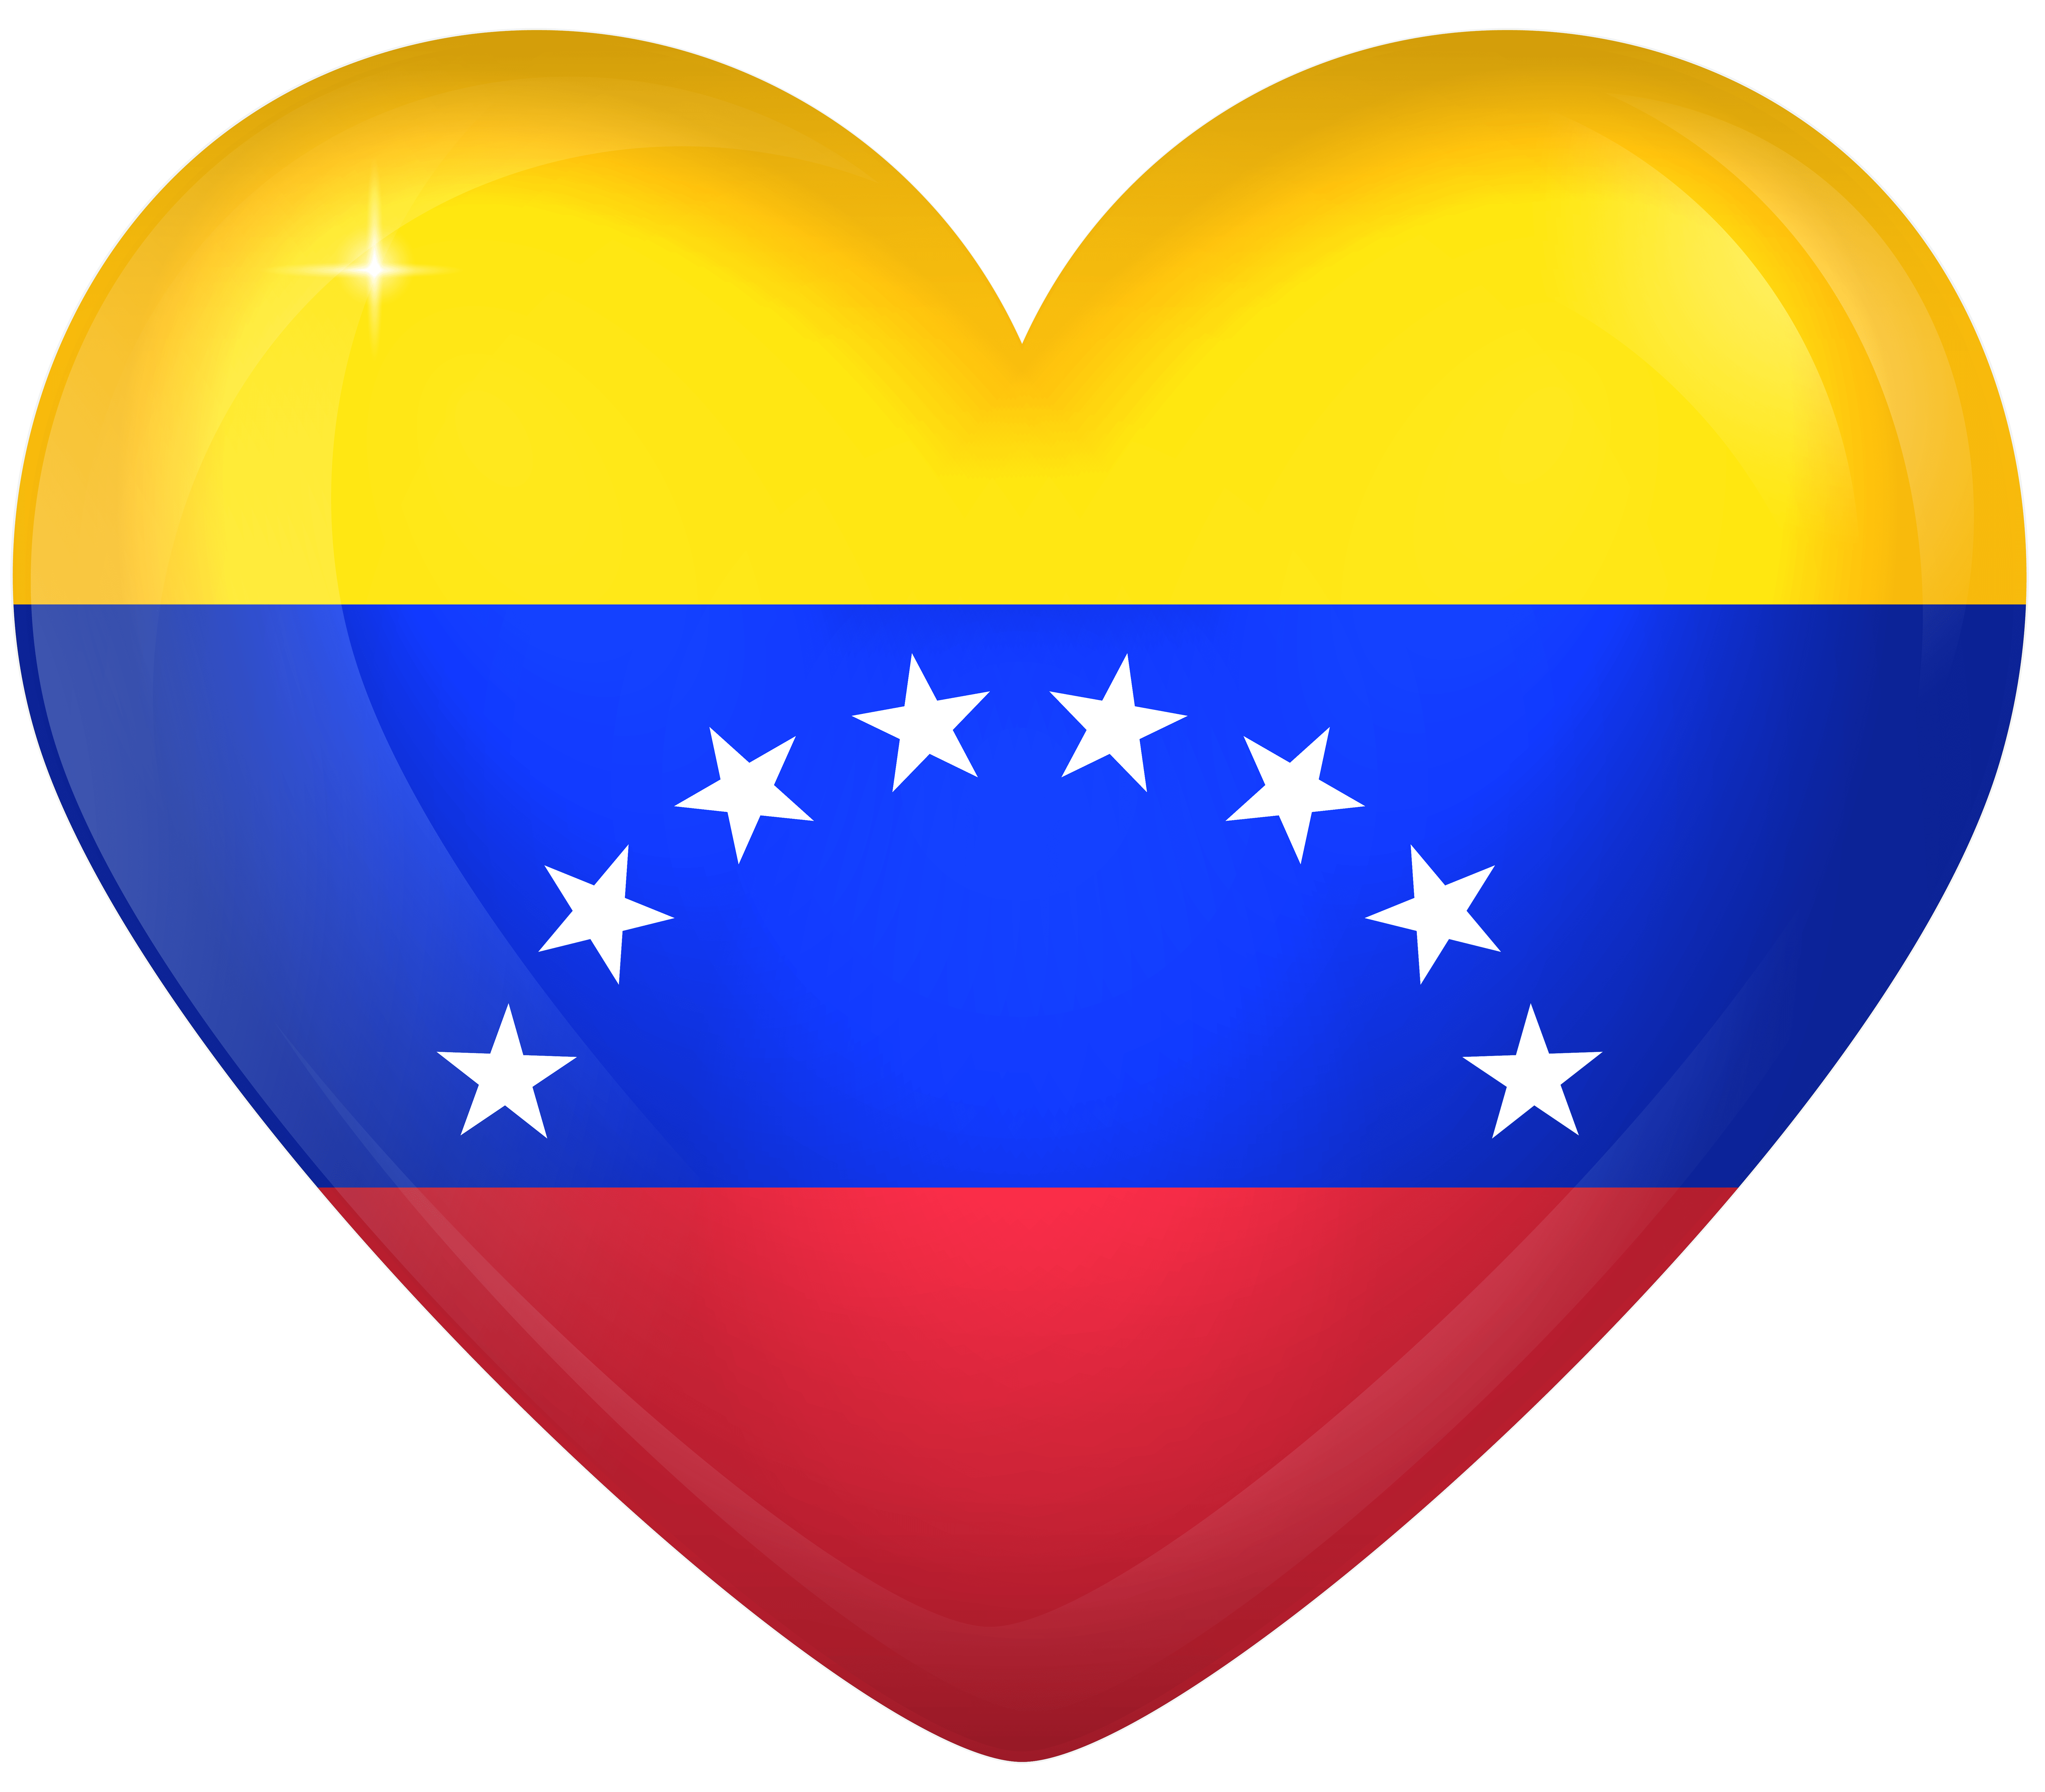 Venezuela Large Heart Flag Quality